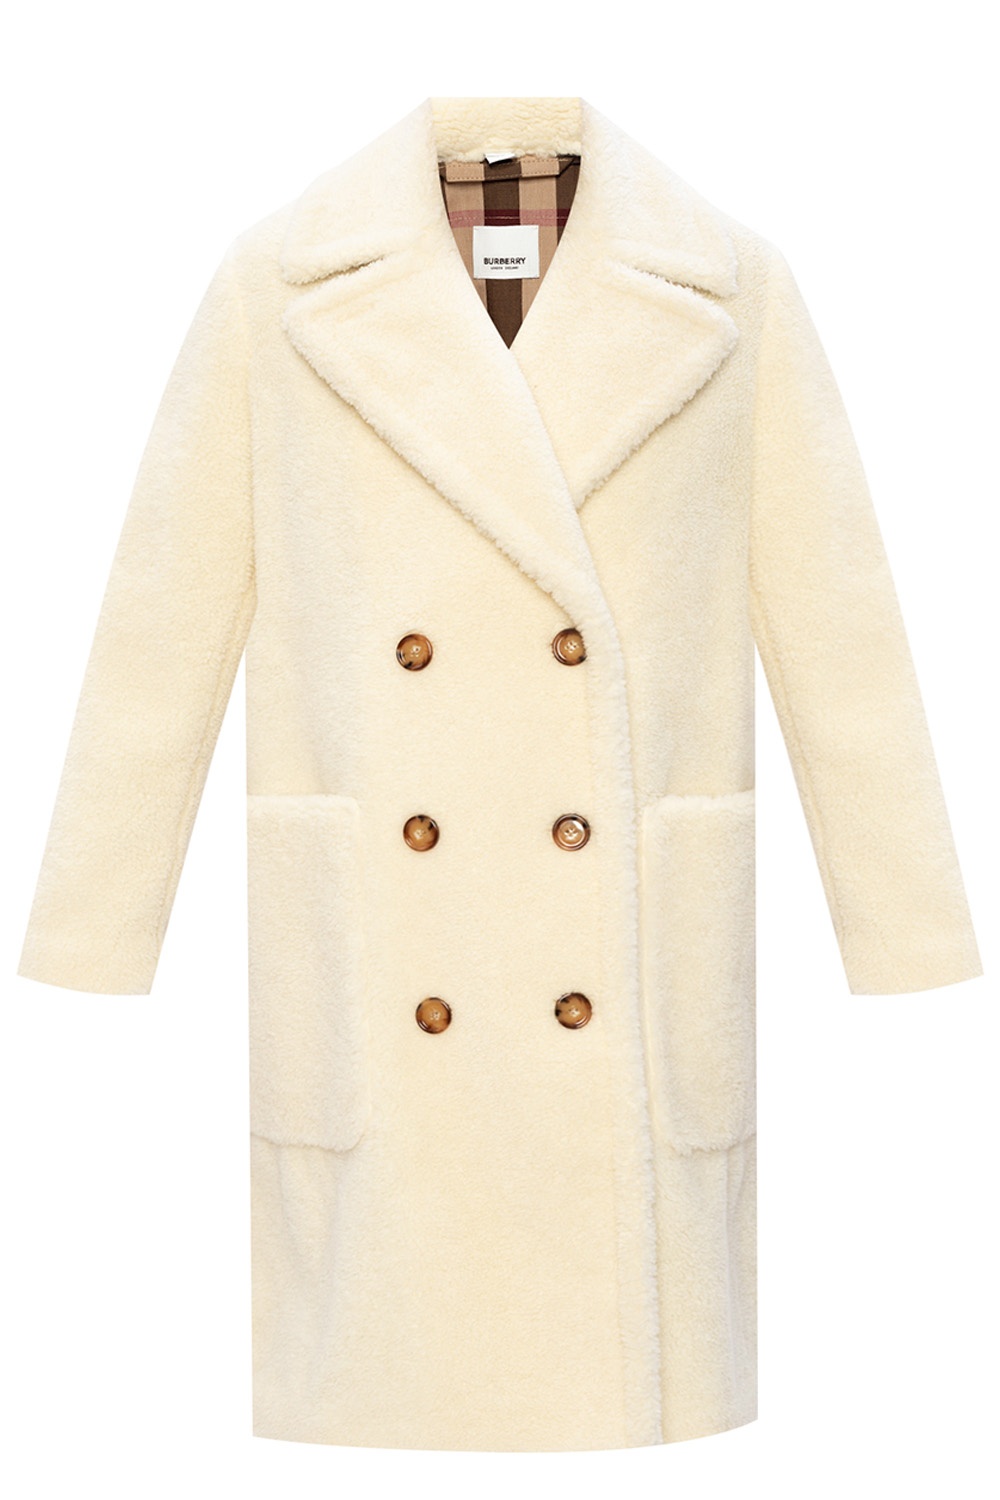 Burberry Shearling coat | Women's Clothing | Vitkac